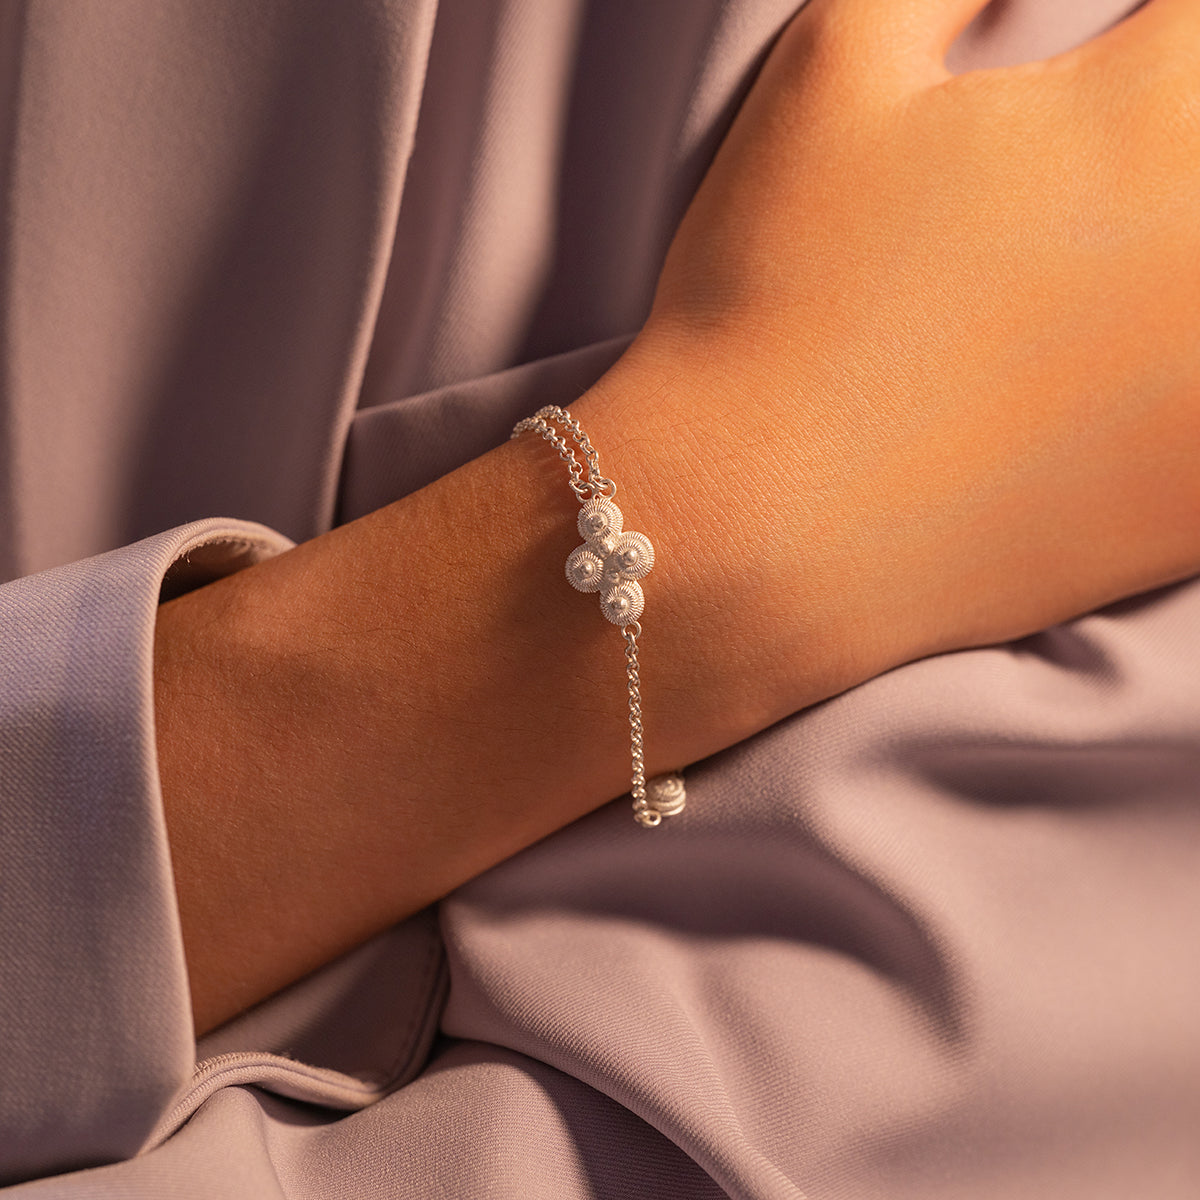 Silver Knots Shaped Bracelet - fareastjewelry